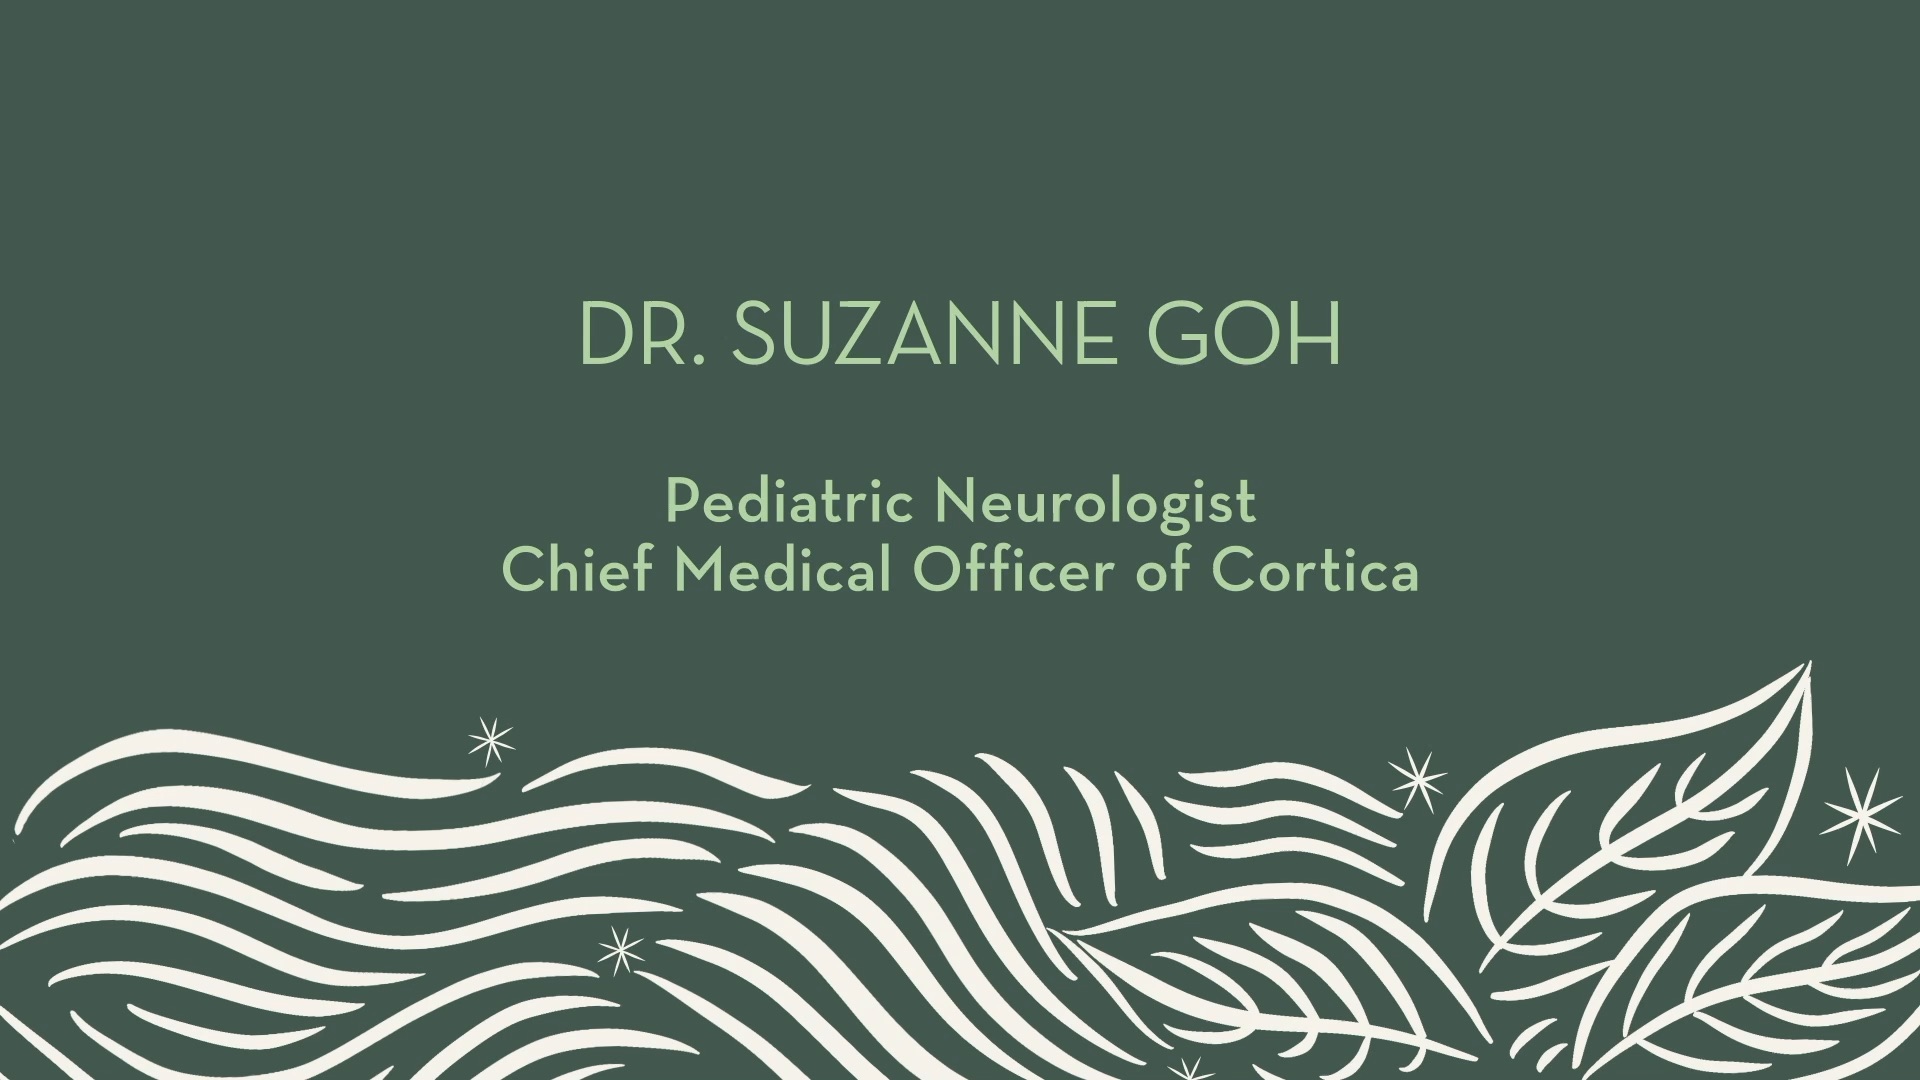 Dr. Suzanne Goh | Introduction